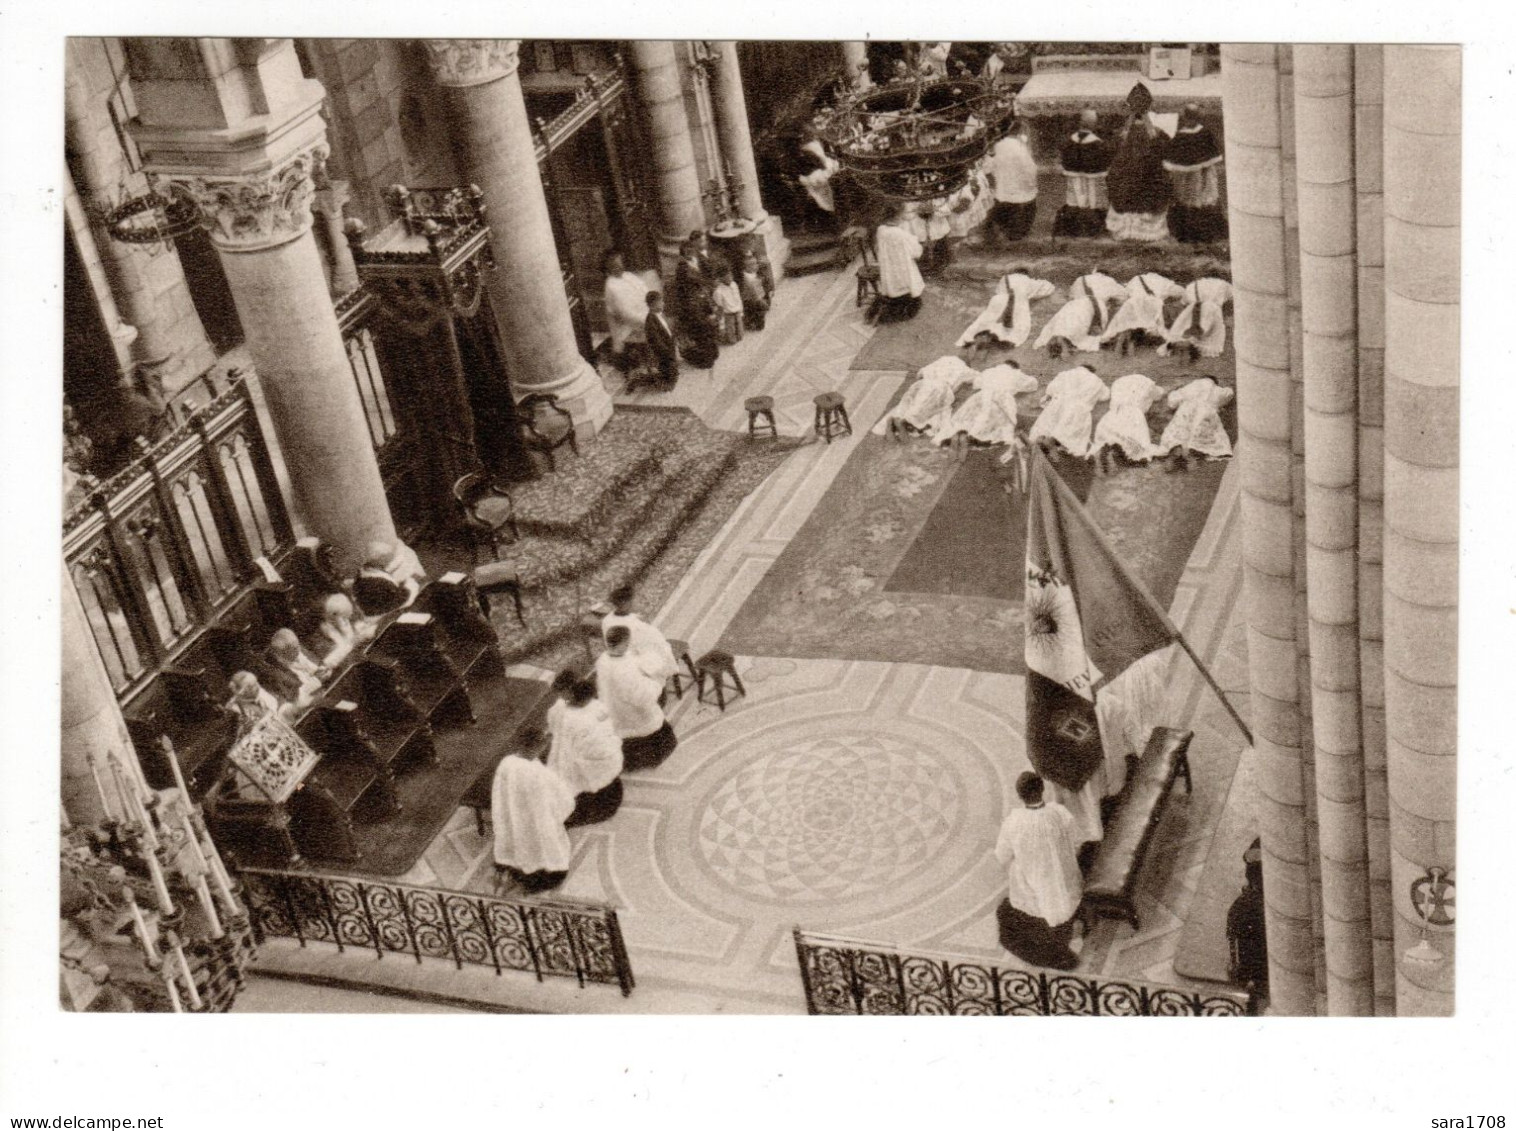 05 GAP, Cérémonie D'Ordination De Prêtres Et De Diacres Dans La Cathédrale En 1934. RARE. 2 SCAN. - Gap